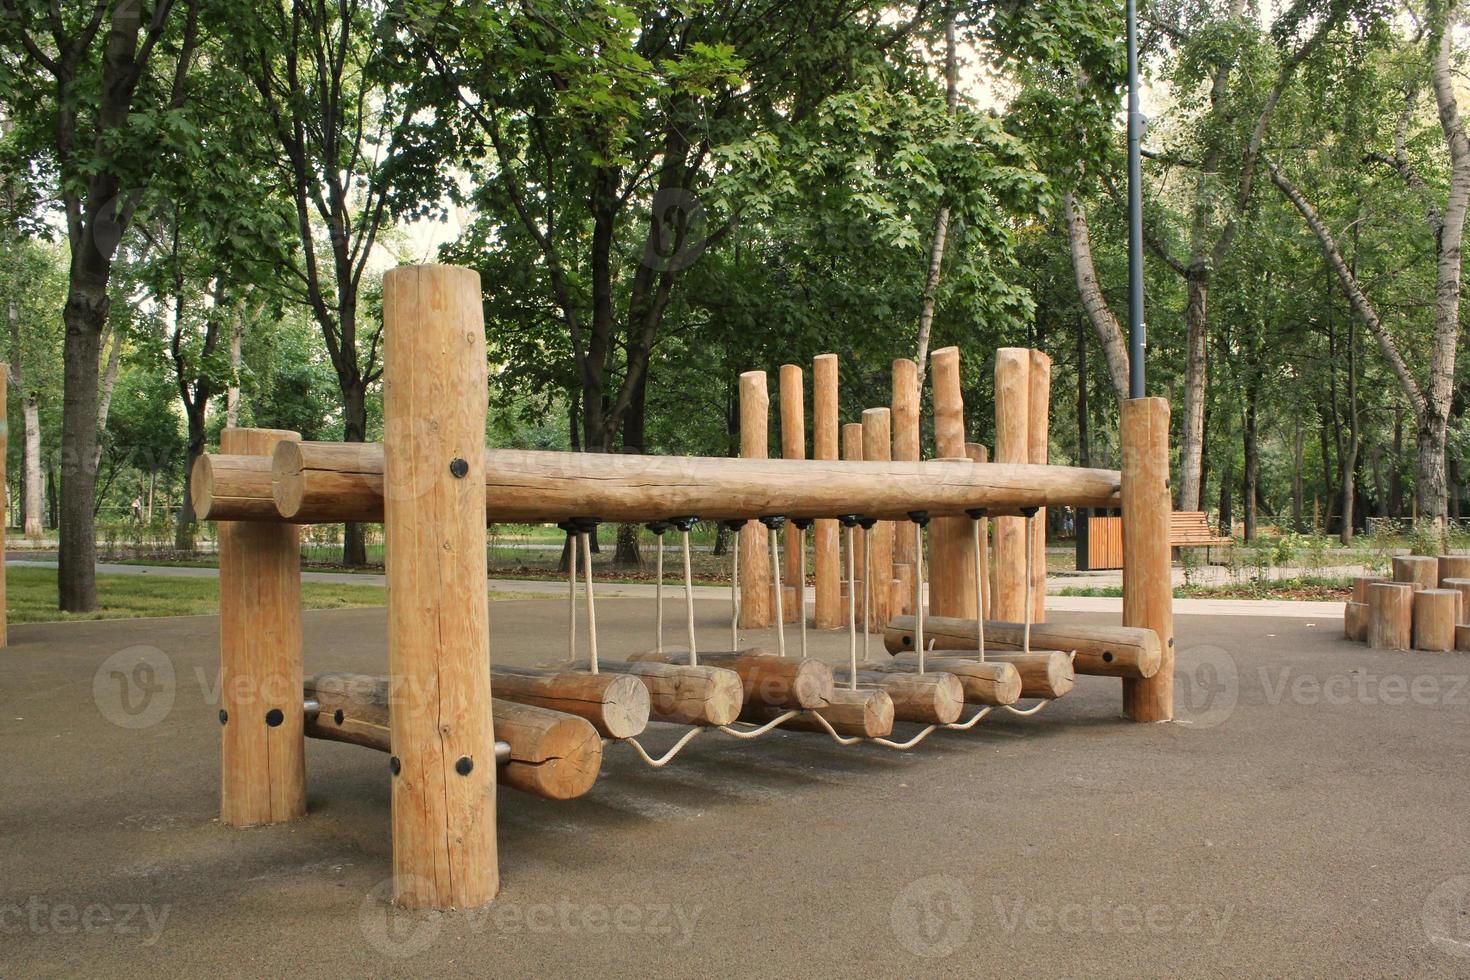 ponte de corda no playground de madeira de crianças modernas ao ar livre em um parque público da cidade. descanso de estilo de vida ecologicamente correto e conceito infantil de infraestrutura ambiental de segurança para crianças. aventura engraçada foto